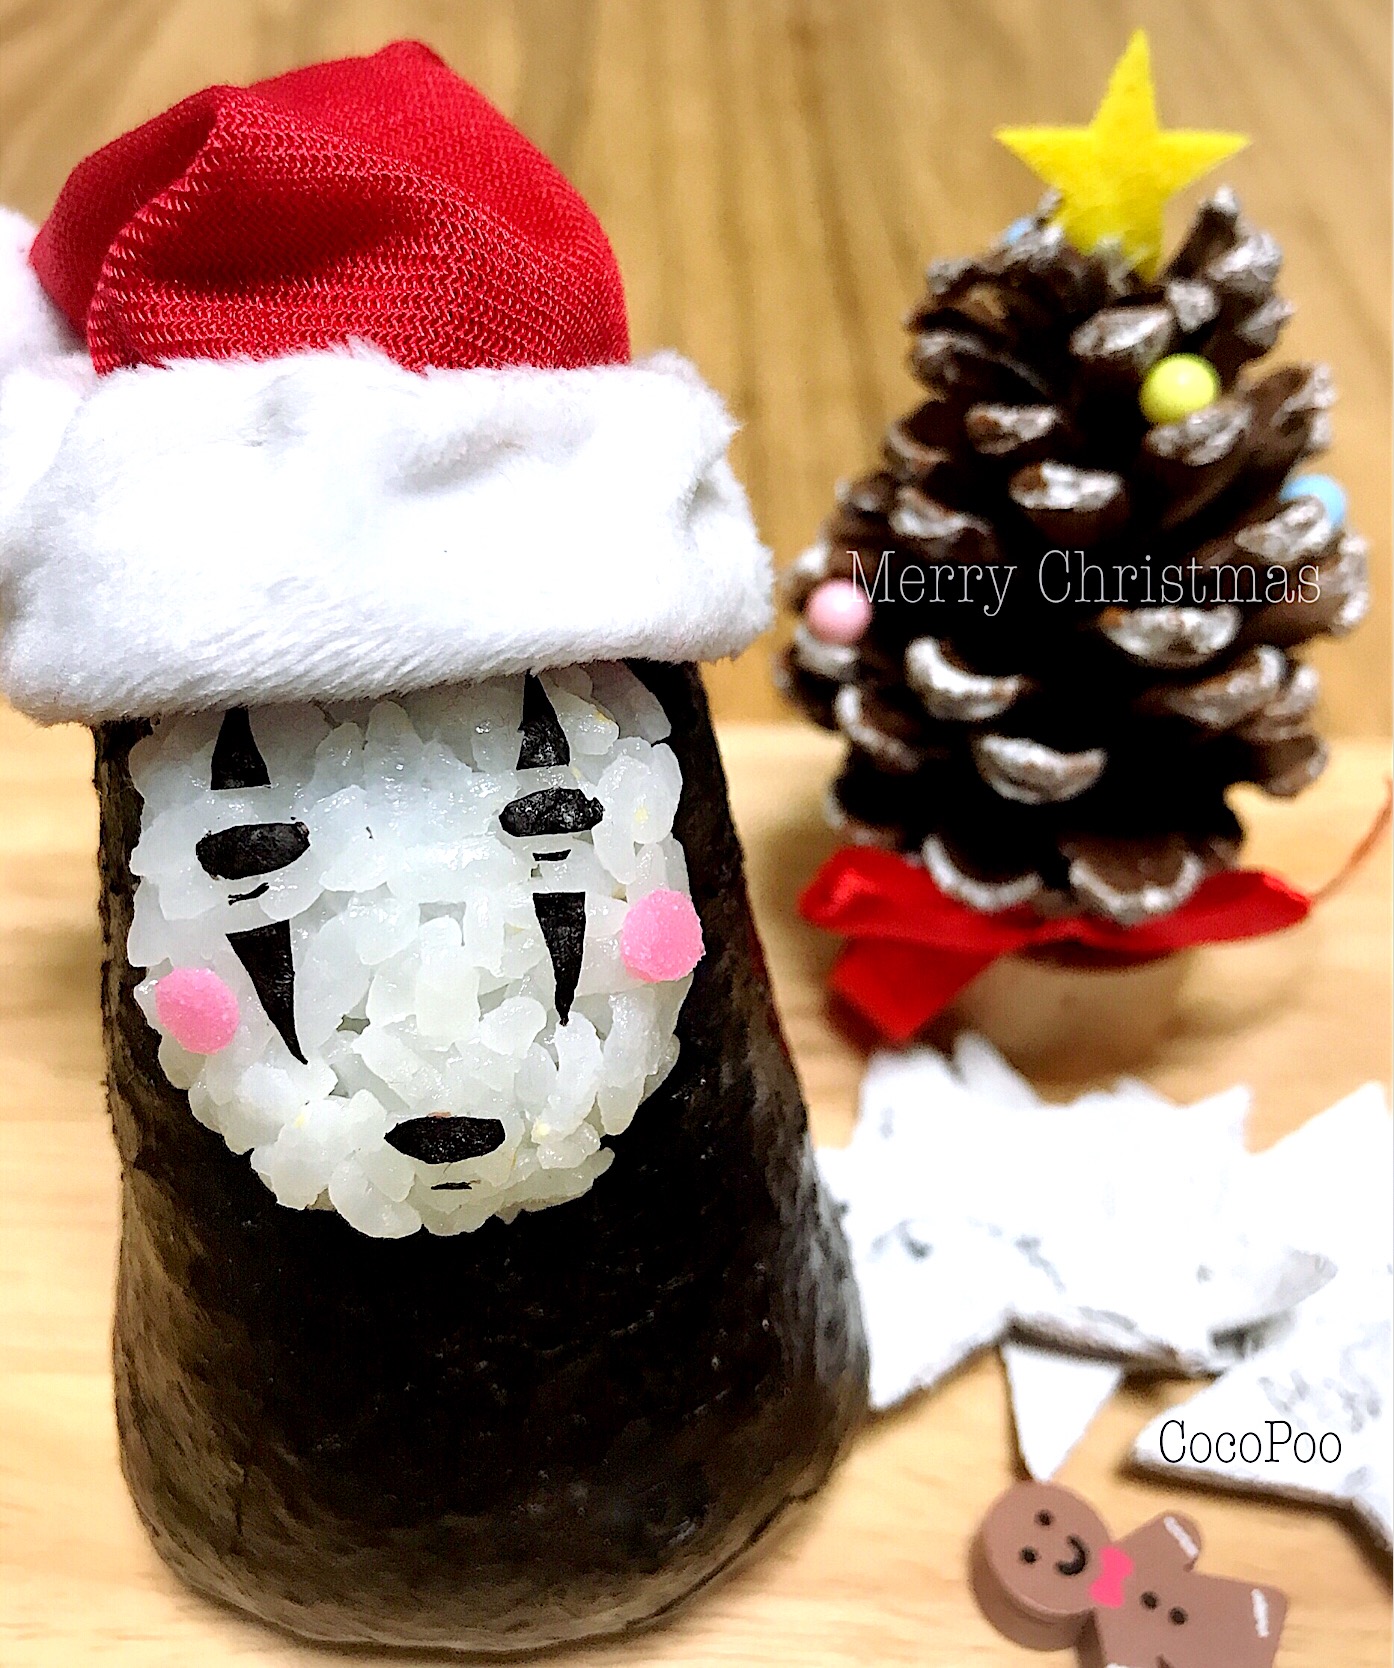 カオナシおにぎりdeメリークリスマス クリスマスパーティーグランプリ ヤマサ醤油株式会社